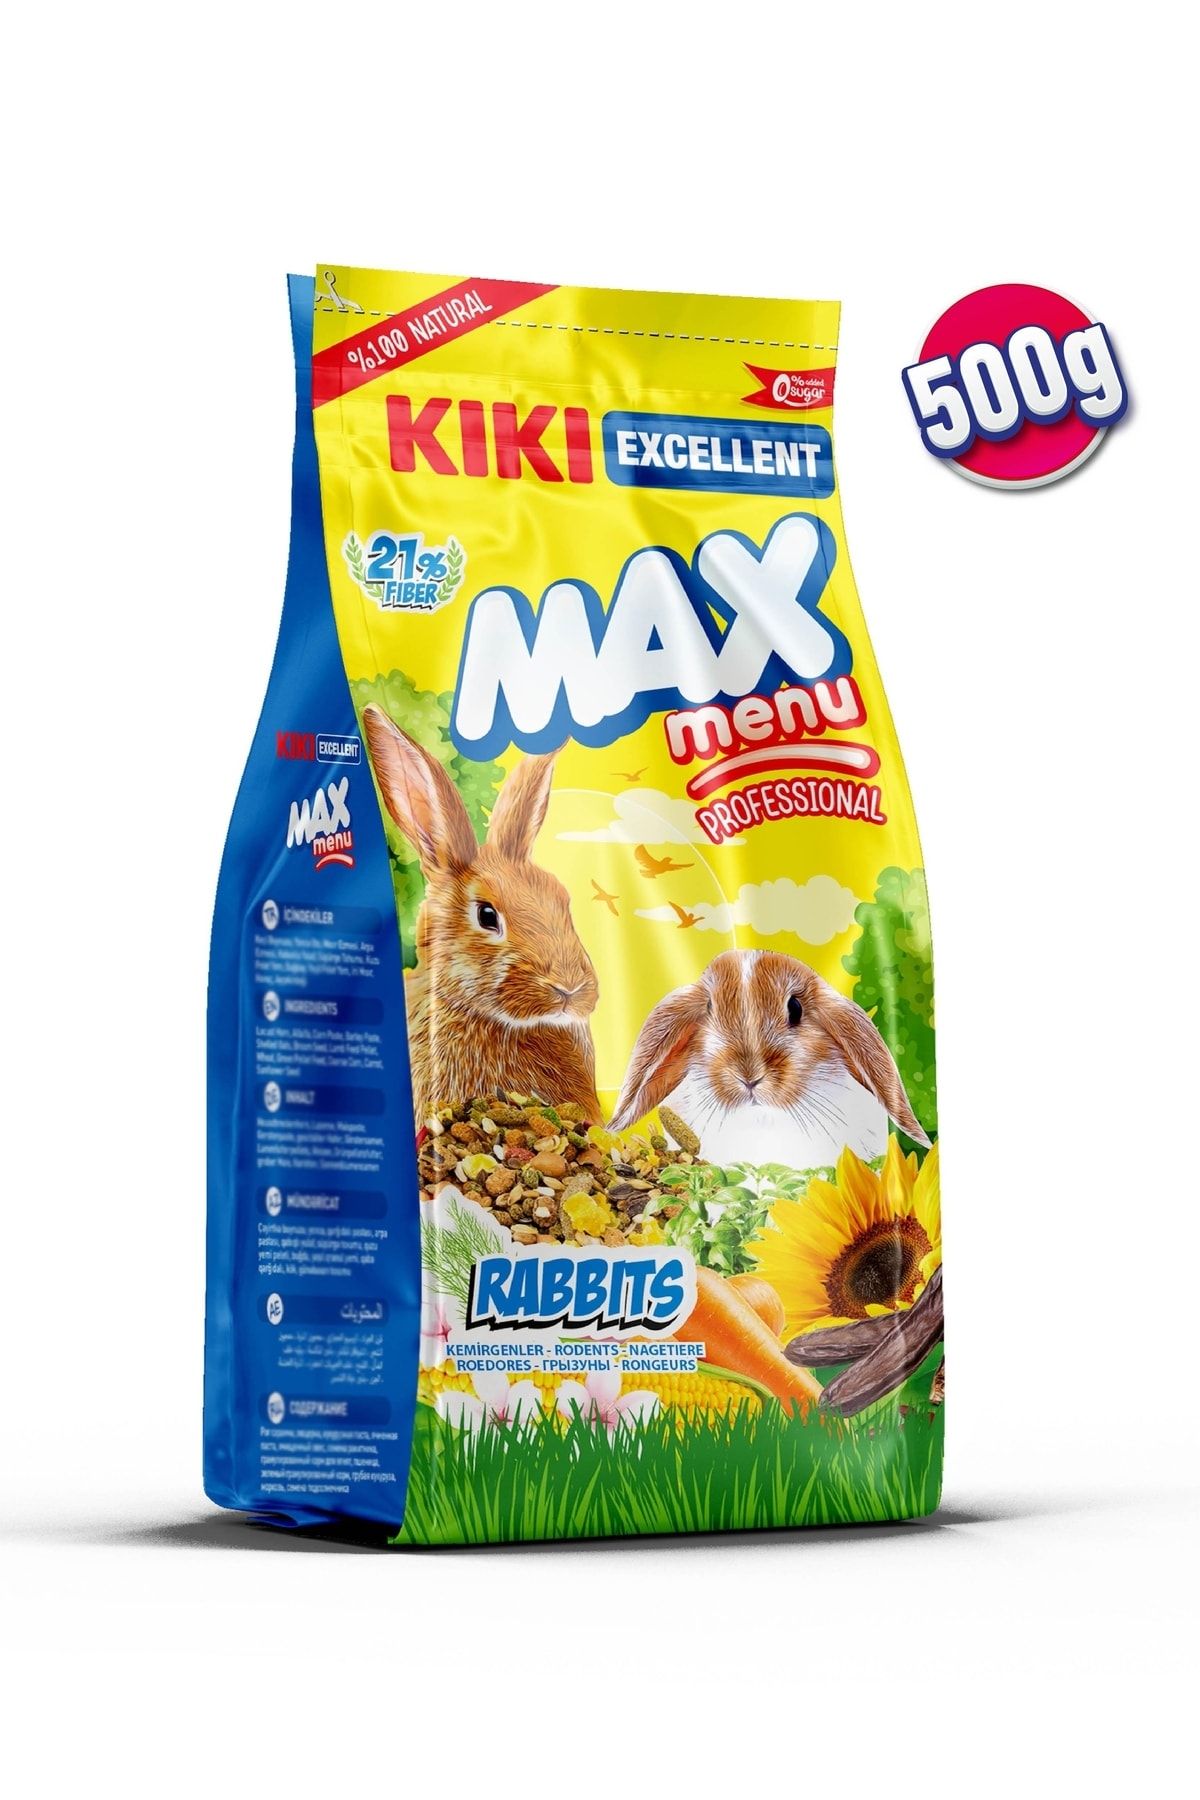 Kiki Excellent Kemirgen Max Menu Rabbits Tavşan Yemi 500 Gr. Kg301